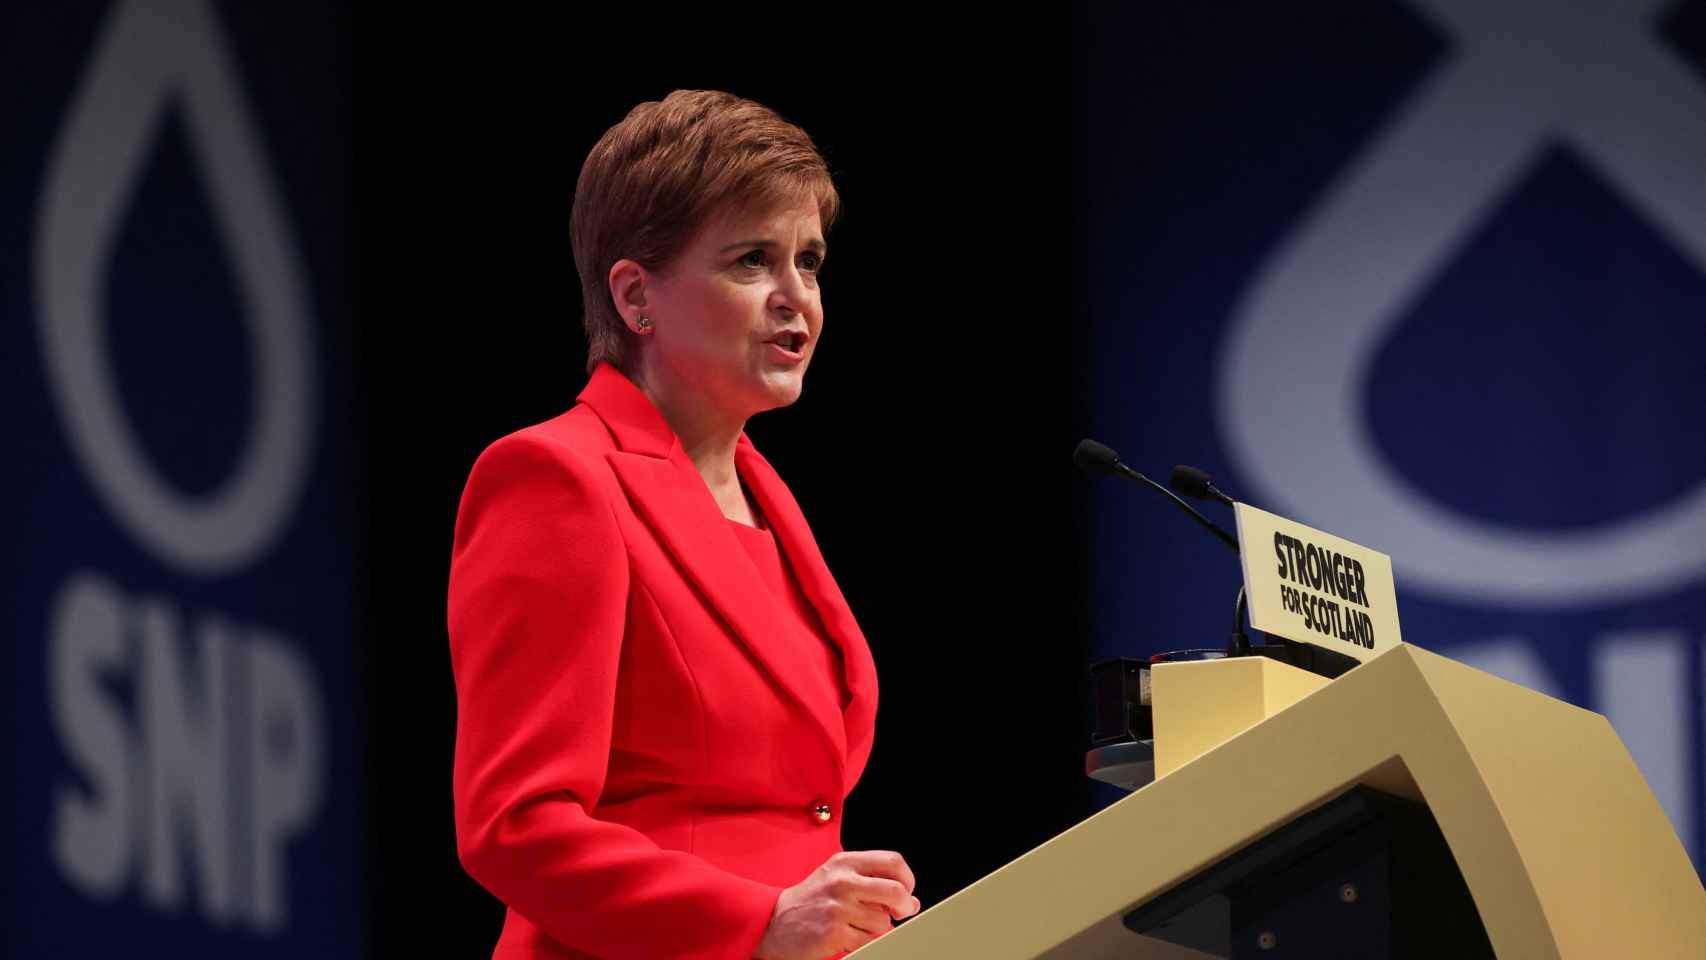 La primera ministra de Escocia, Nicola Sturgeon, en la conferencia nacional de su partido (SNP).